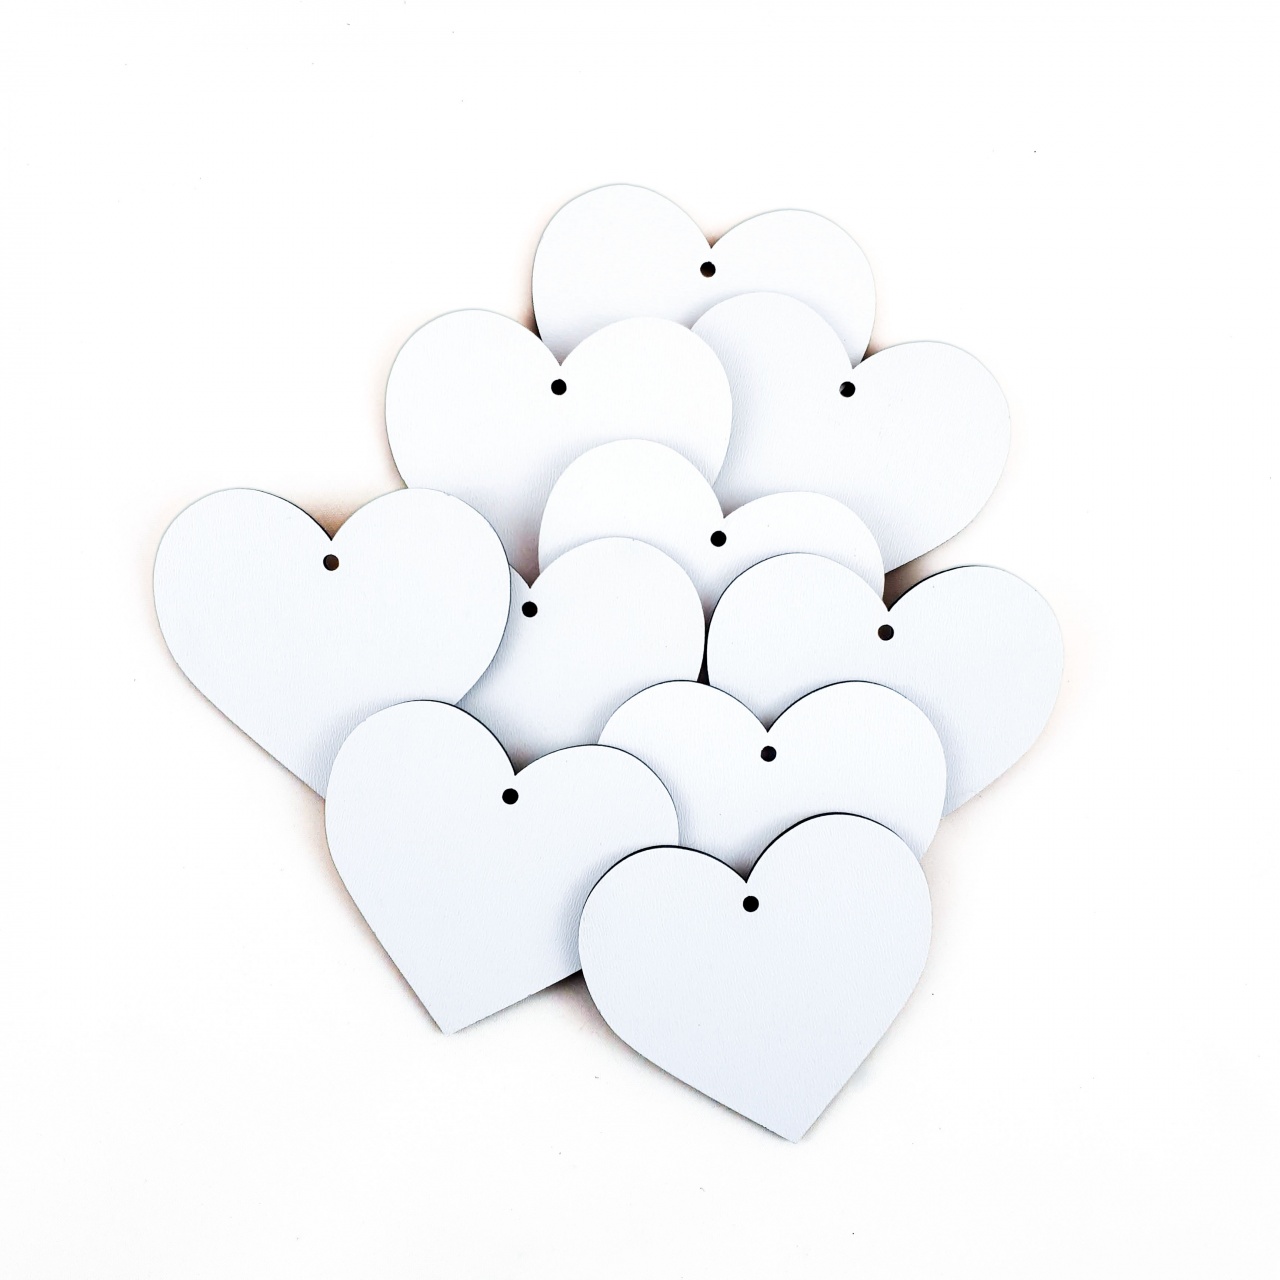 Inimă, 6×5,5 cm, MDF alb, 10 buc :: 6 cm